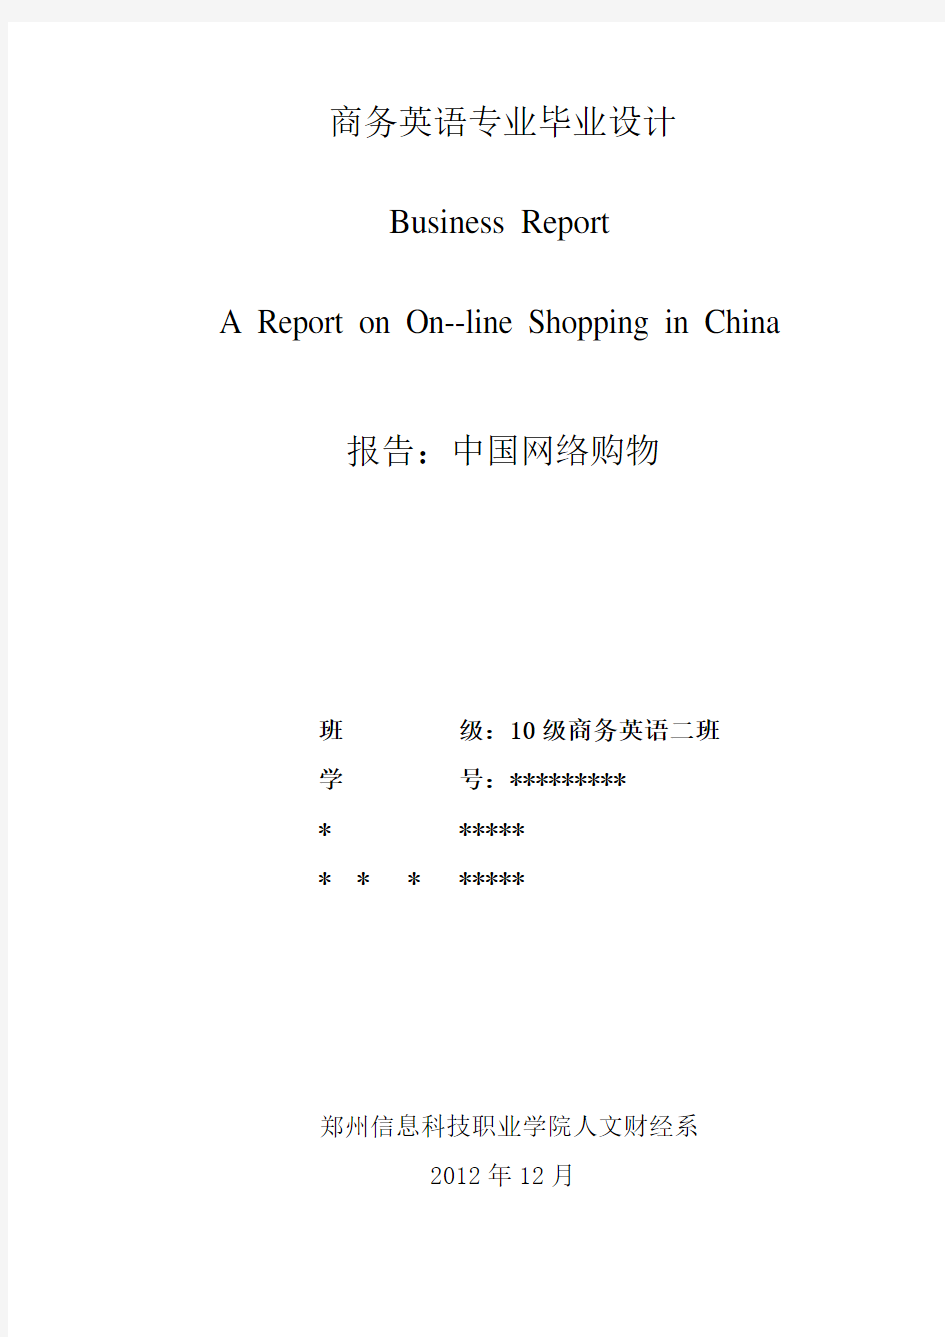 一篇关于中国网络购物的报告